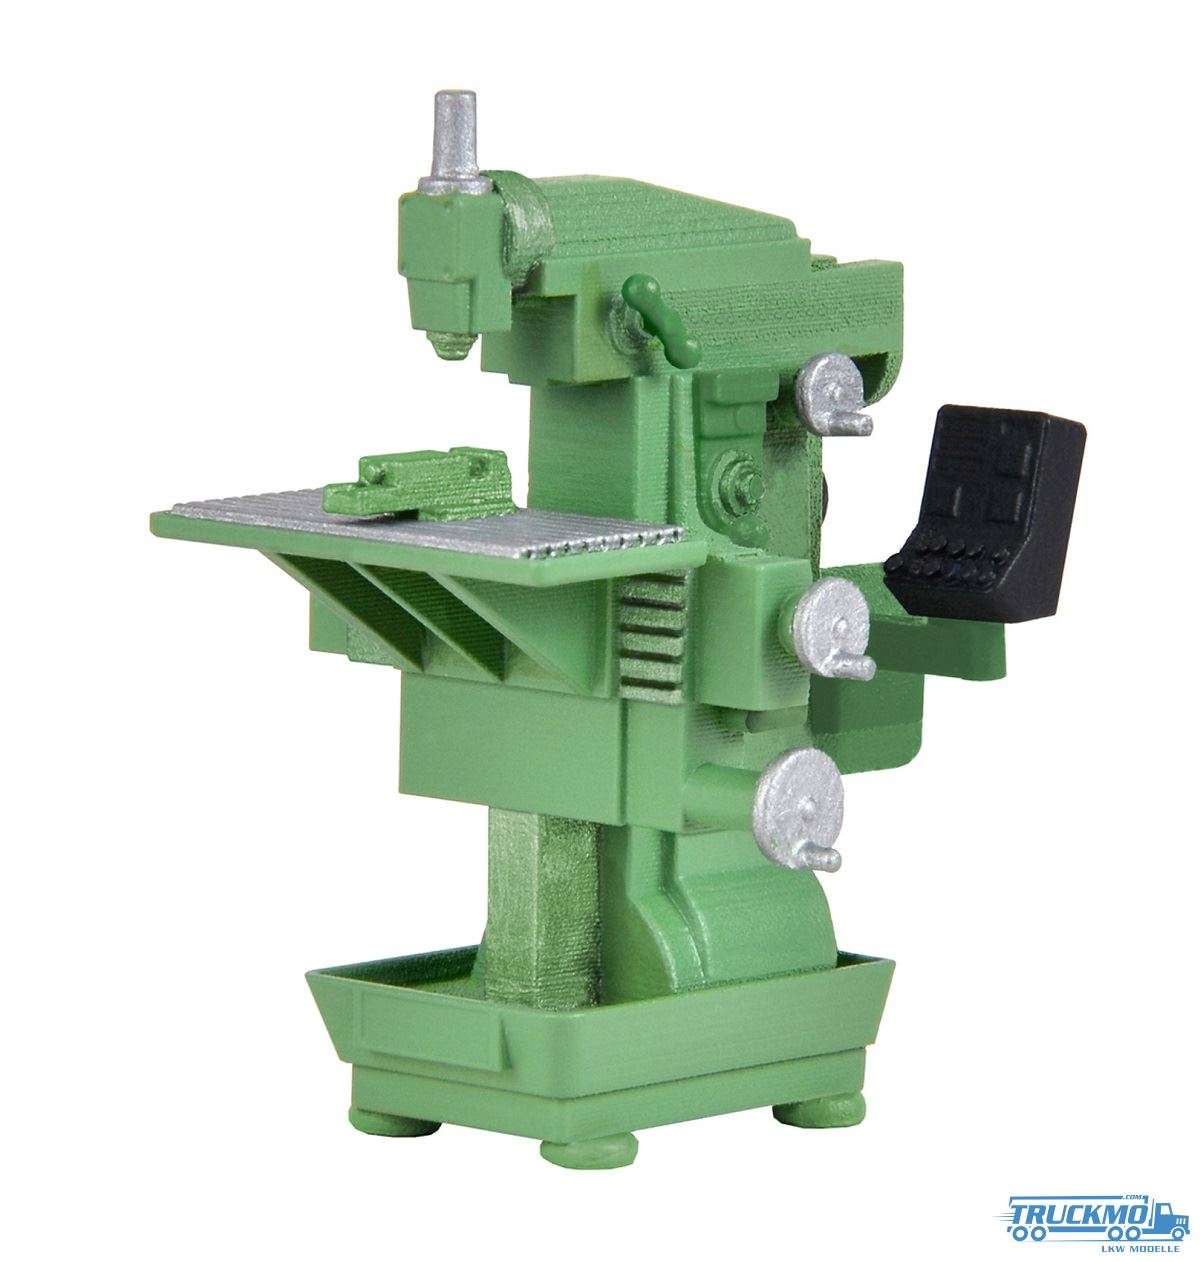 Kibri milling machine 38671